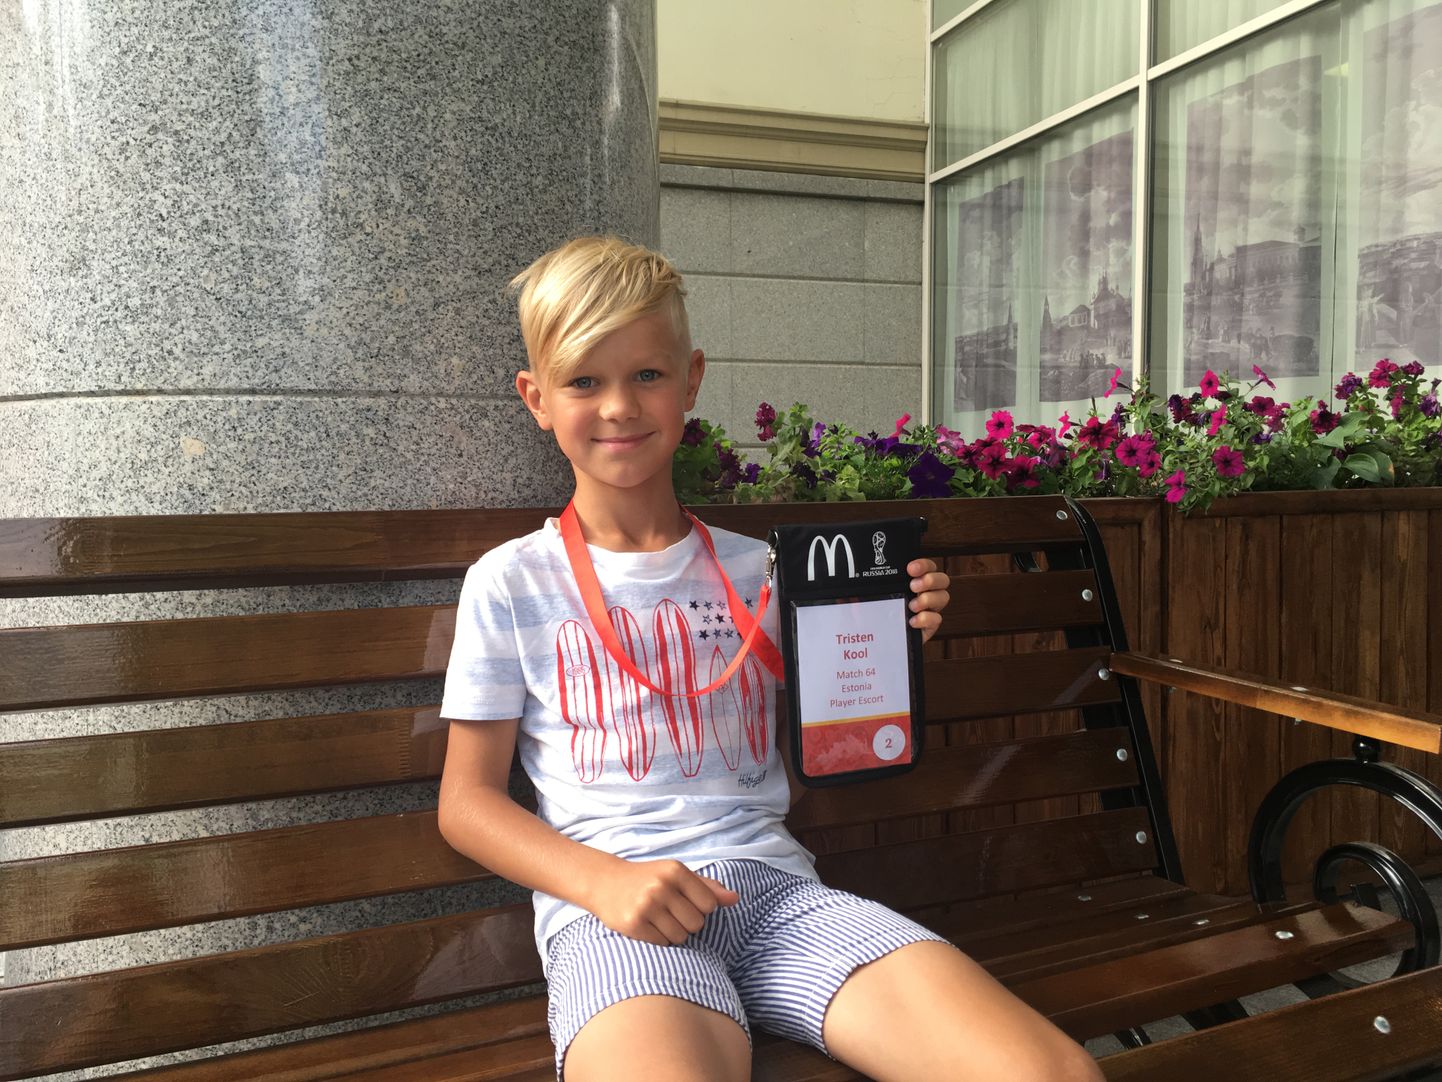 Pühapäevases MM-finaalis osaleb ka üks eestlane - 8-aastane FC Ülenurme noormängija Tristen Kool on üks 22st jalgpallurite väljakule saatjast. «Kõige rohkem tahaksin väljakule saata Kylian Mbappe. Ta on nii ägedalt kiire!» sõnas eile Moskvasse jõudnud Tristen.